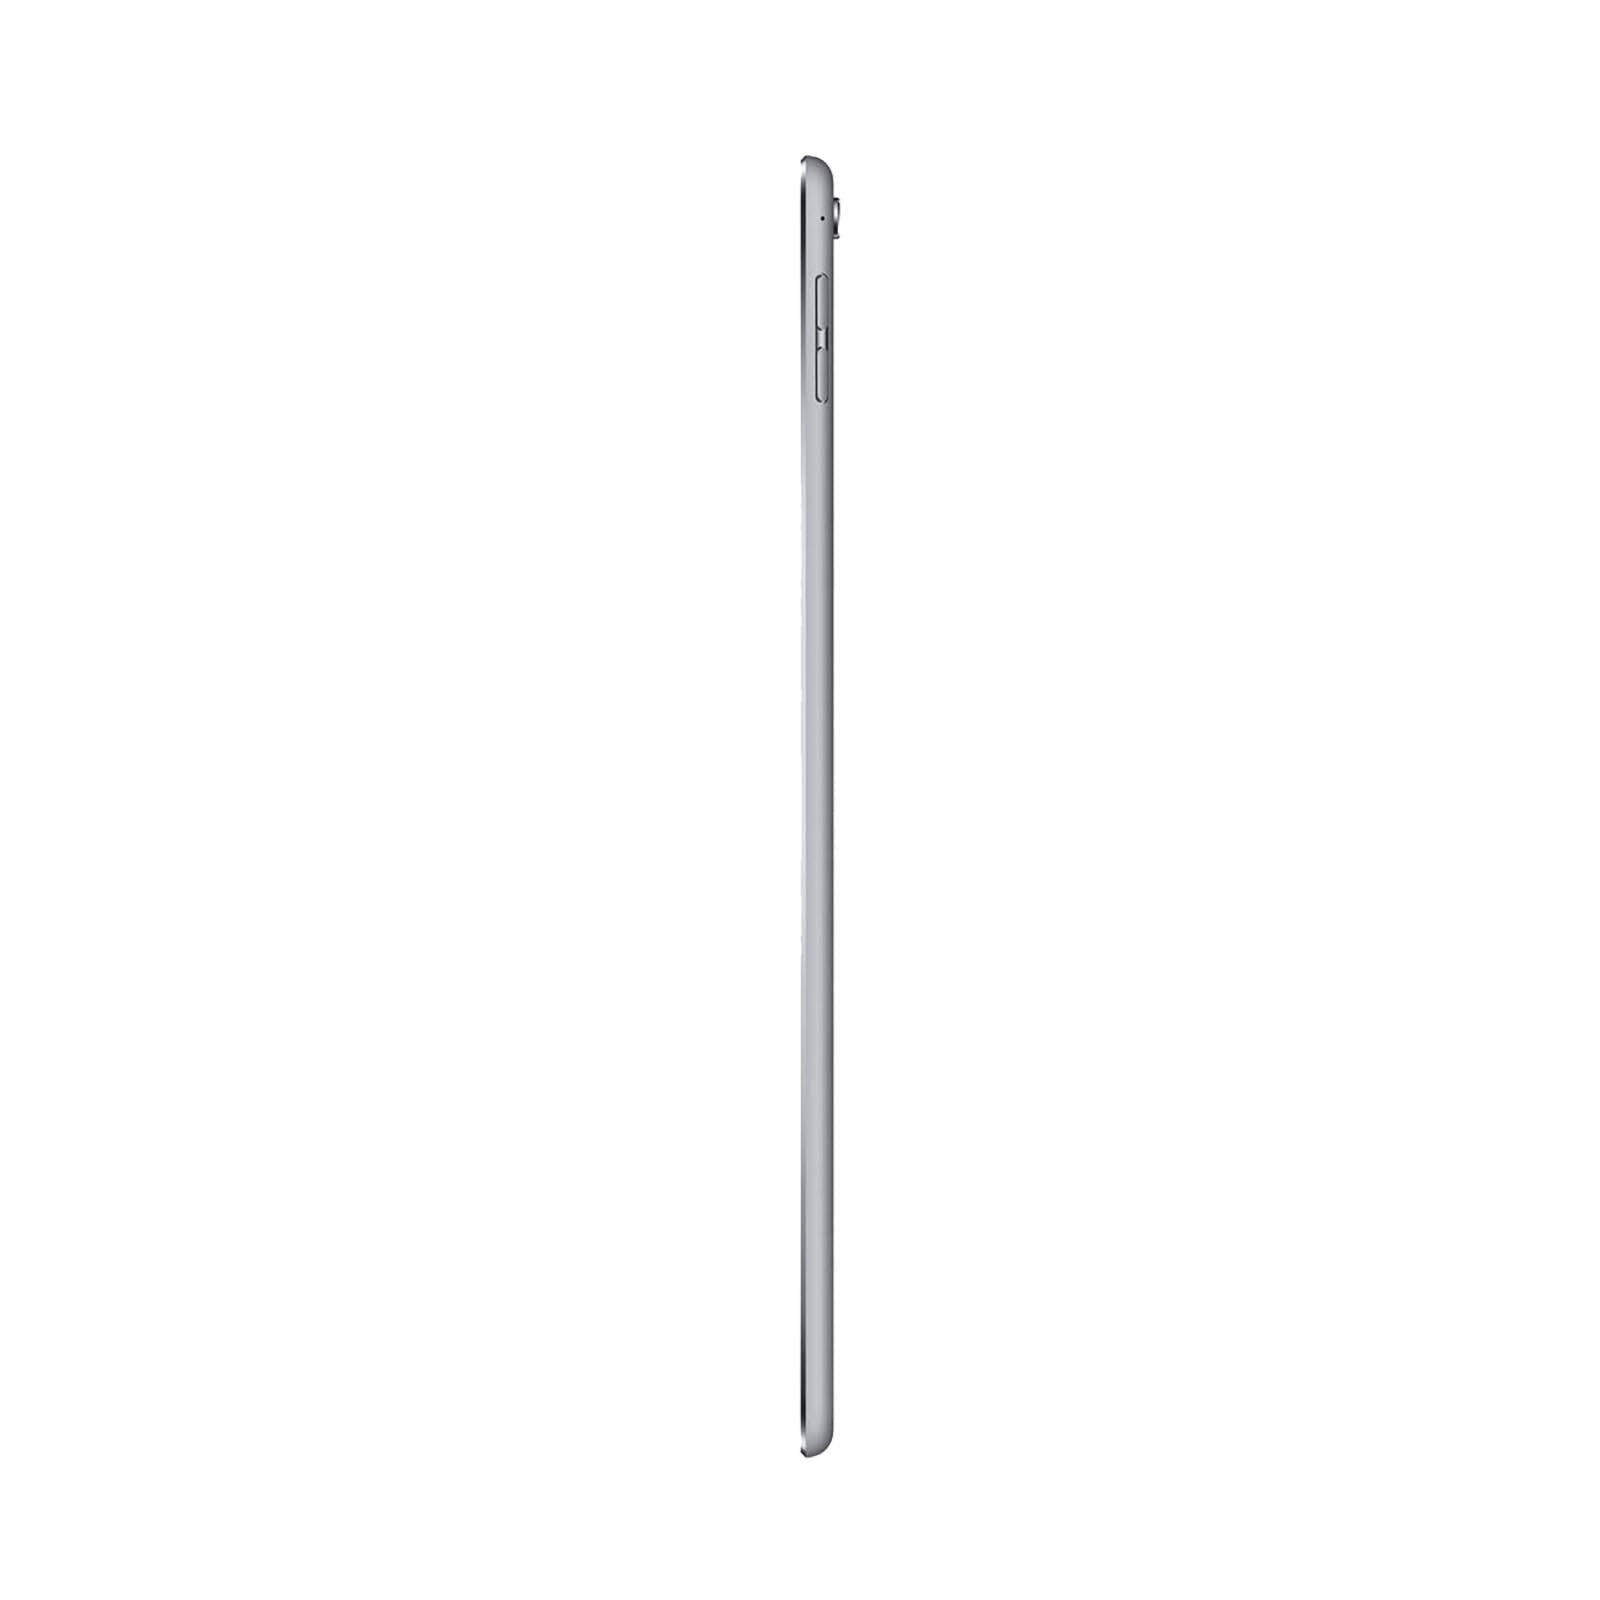 iPad Pro 9.7 Inch 32GB Space Grey Good - WiFi